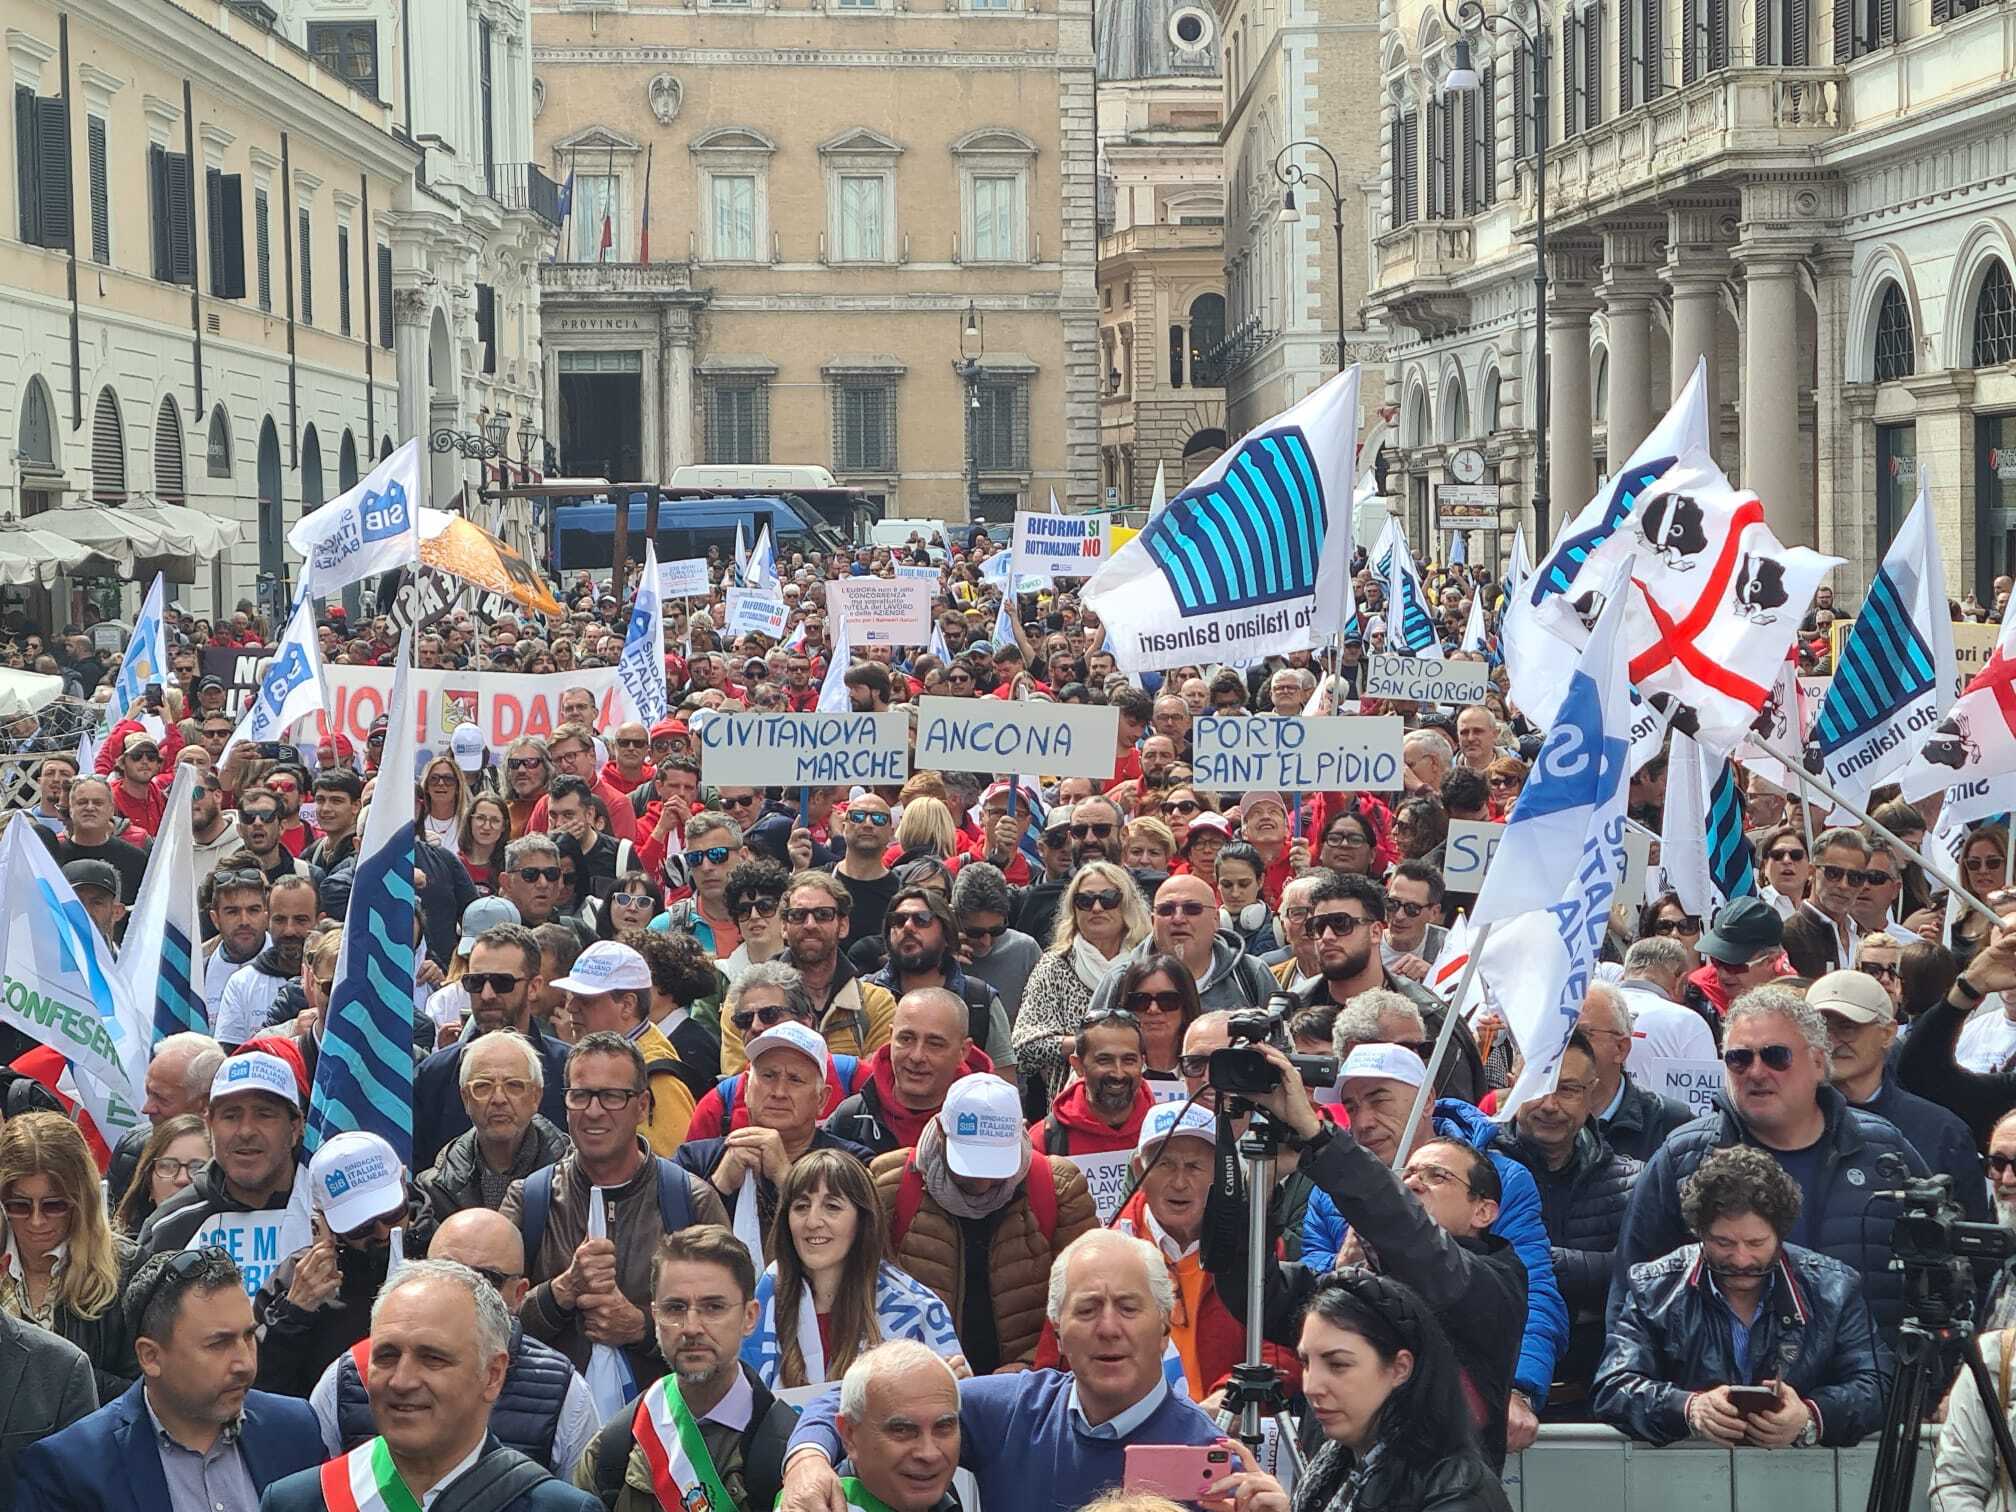 Roma: Balneari, oltre 5000 in corteo a difesa aziende e lavoro